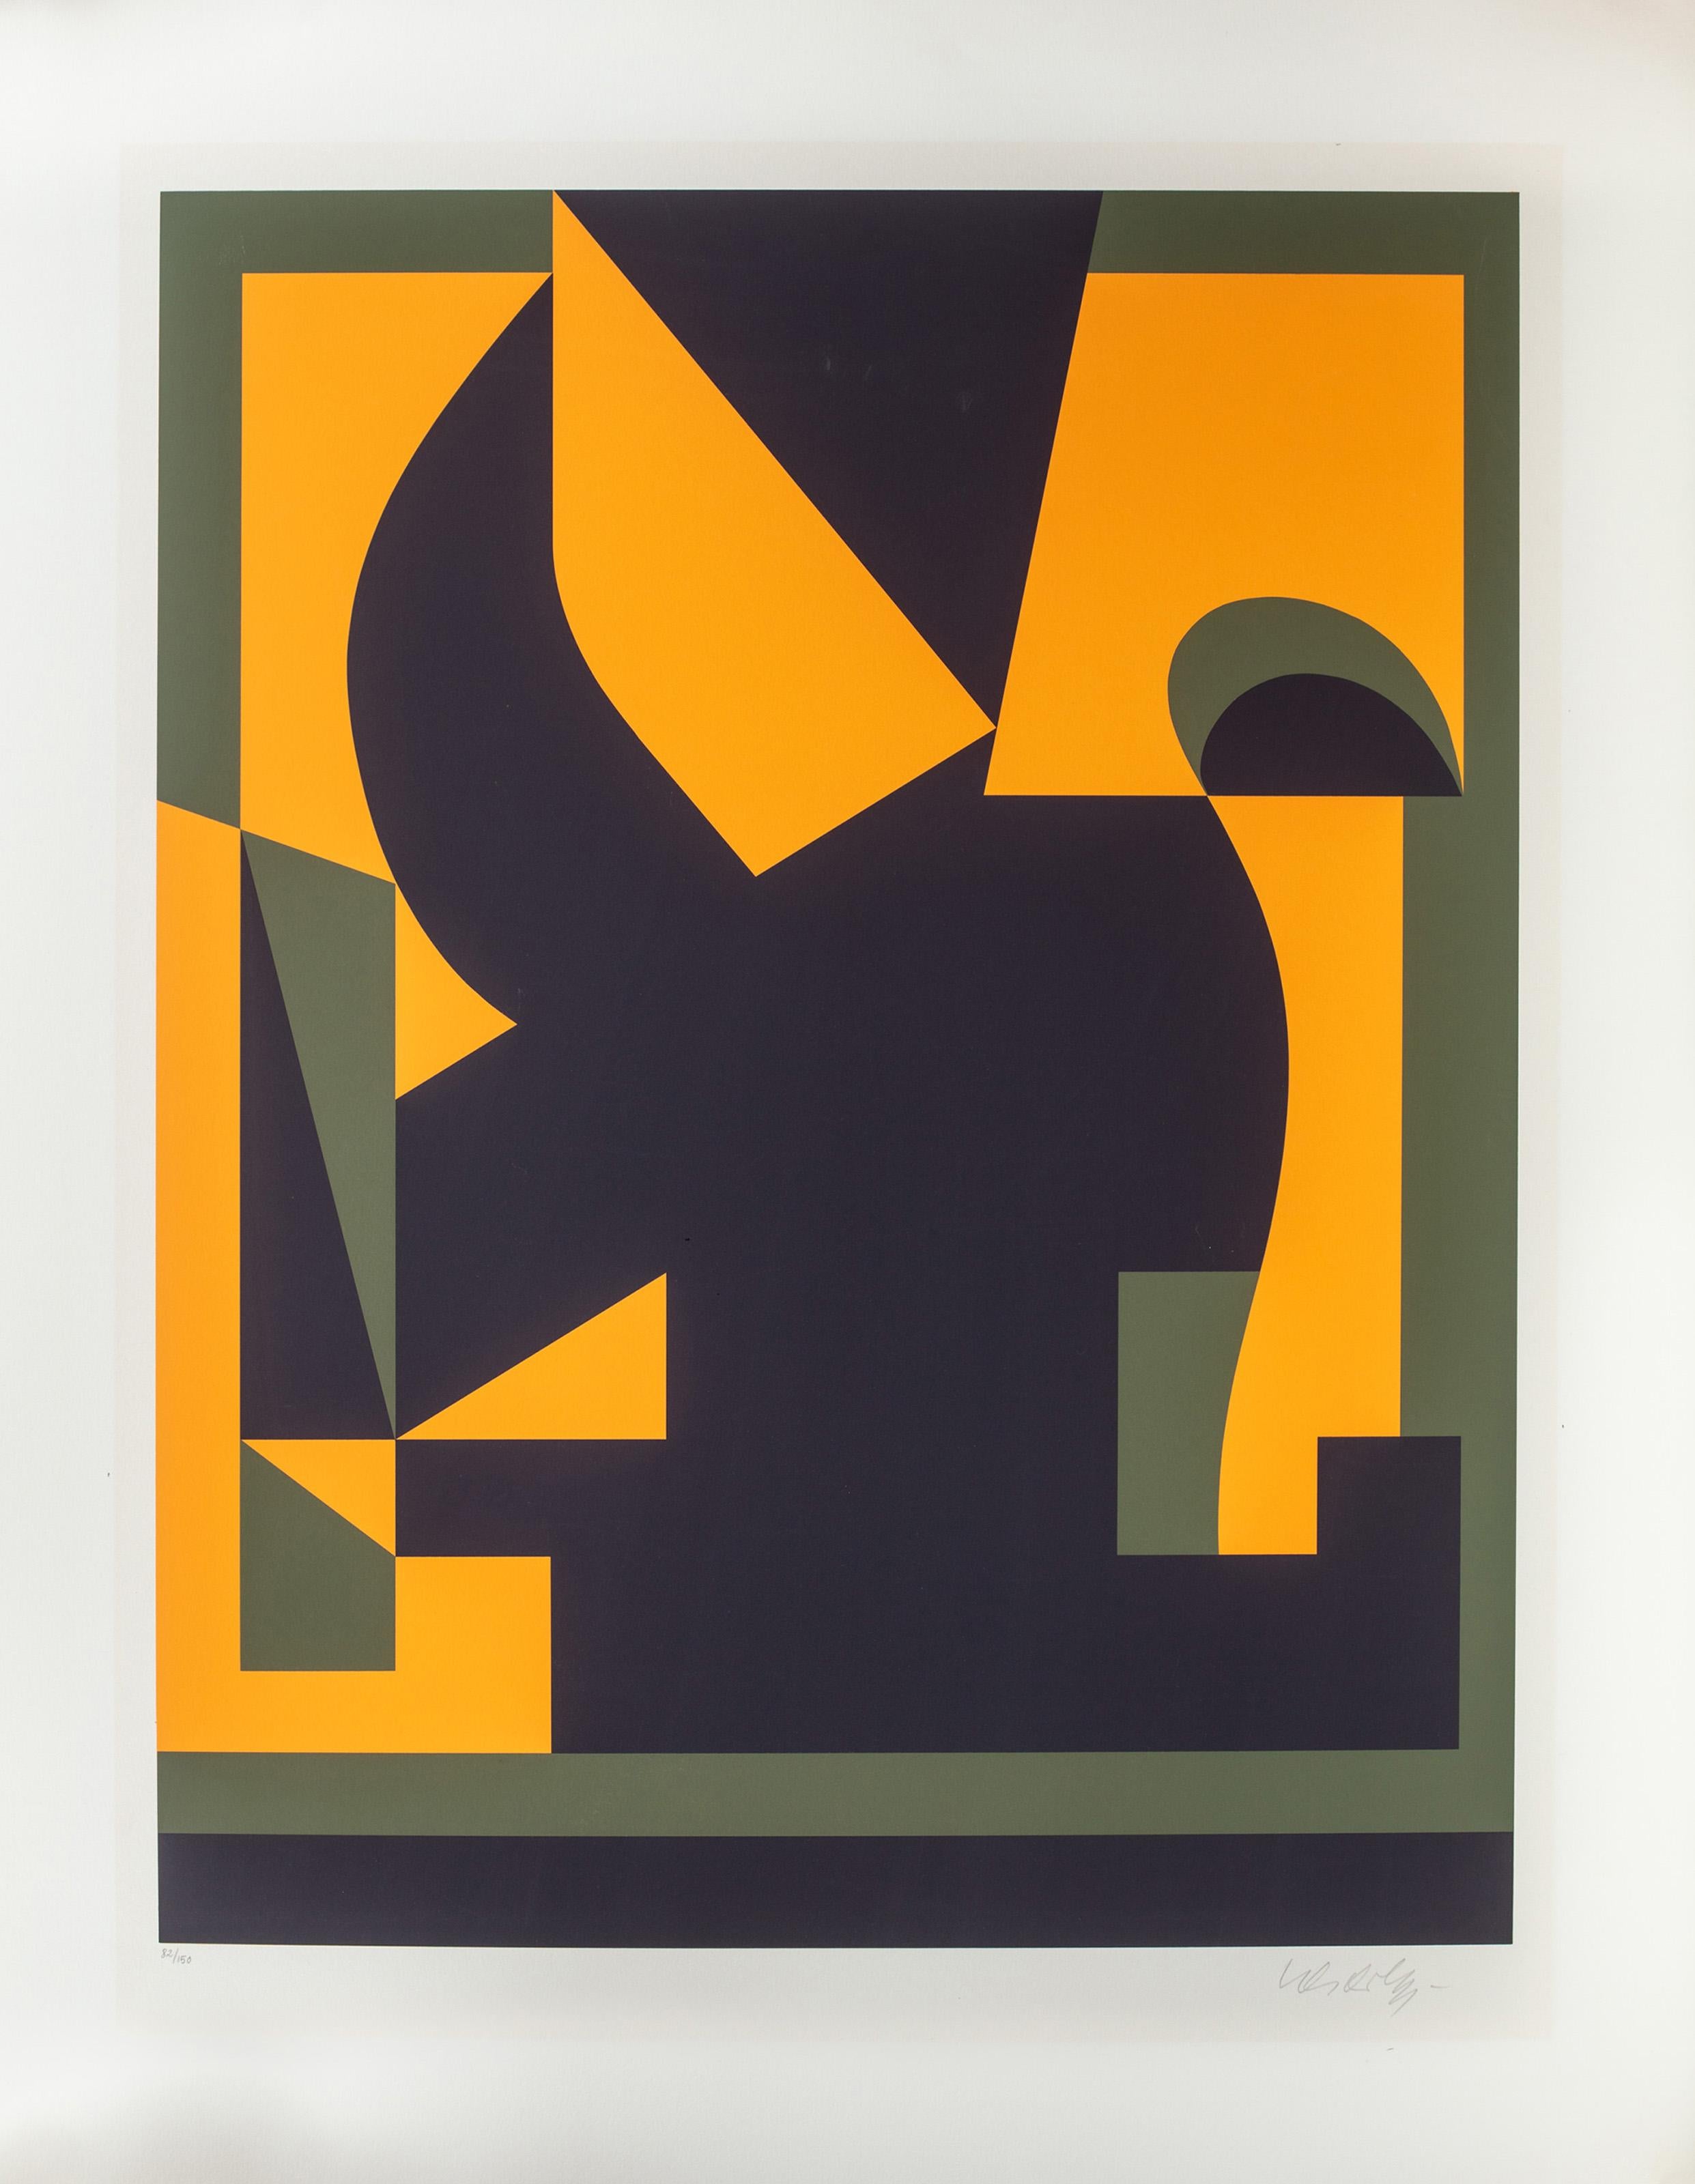 Diese Lithografie von Victor Vasarely, die normalerweise für seine Op-Art-Kompositionen bekannt ist, ist eher der geometrischen Abstraktion zuzuordnen. Vasarely verwendet nur drei Farben, um eine kühne und unentzifferbare Spirale aus blockartiger